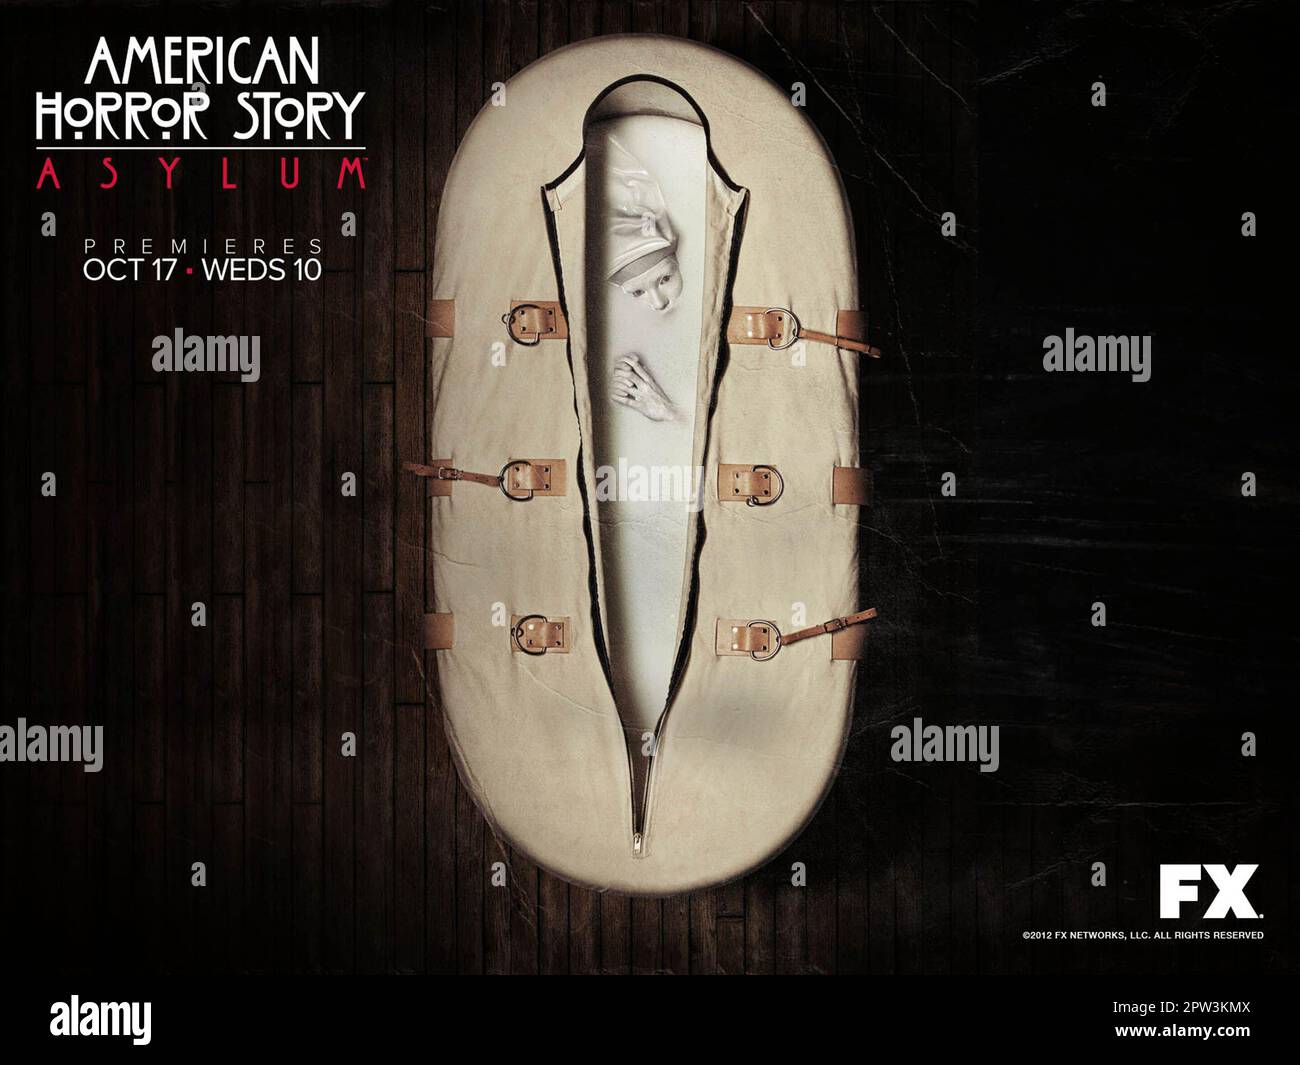 Los Angeles, États-Unis. Une affiche pour la nouvelle série TV ©FX Network:  American Horror Story: Asylum ( 2012 ). Lancé en 1964, American Horror Story:  Asylum nous emmène dans un havre de